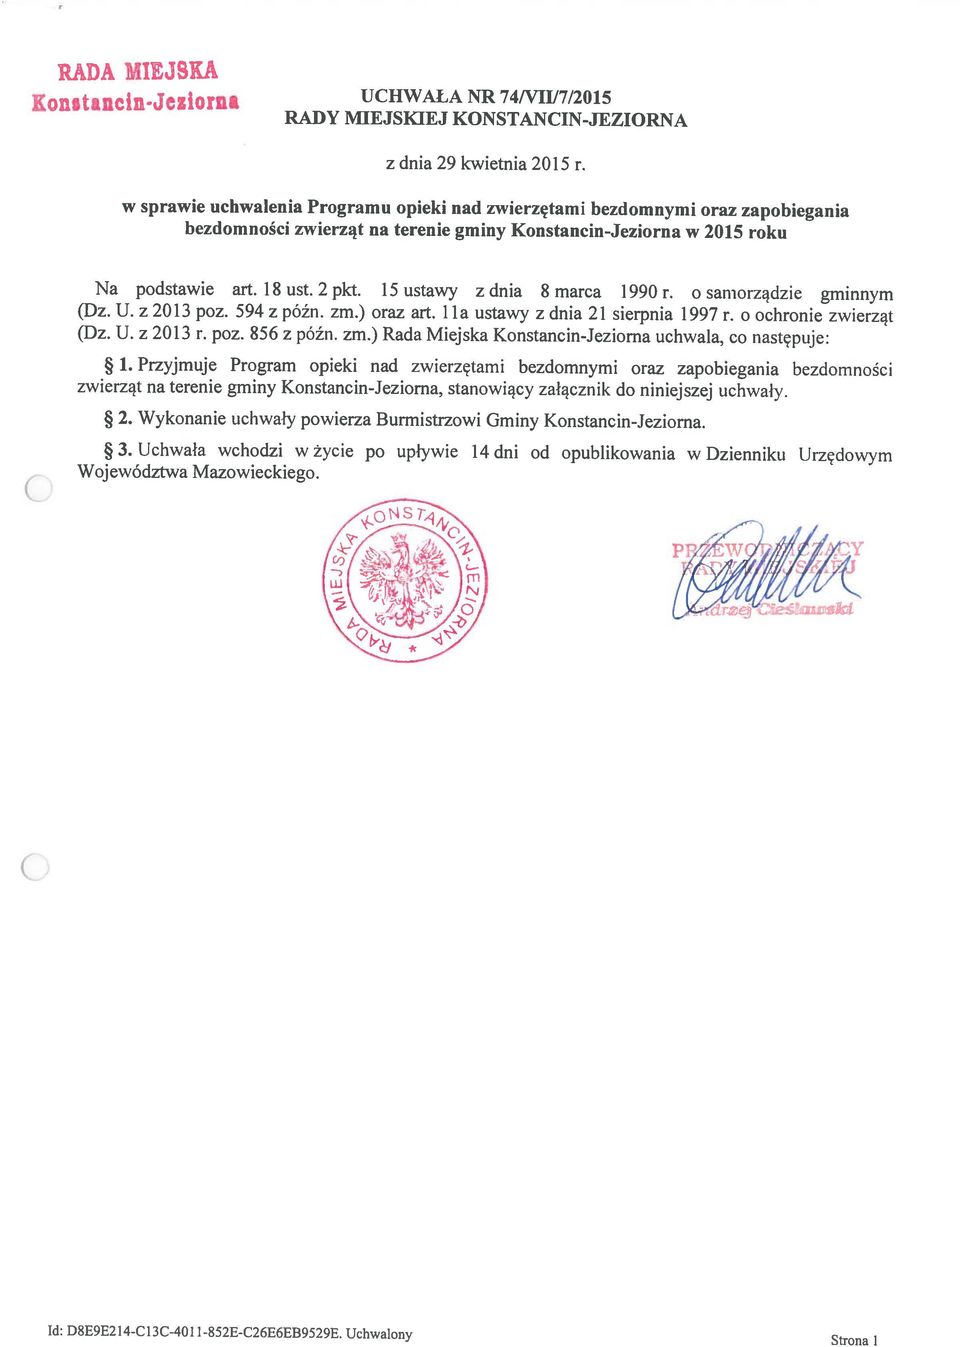 15 ustawy z dnia 8 marca 1990 r. o samorządzie gminnym bezdomności zwierząt na terenie gminy Konstancin-Jeziorna w 2015 roku Id: D8E9E214-C13C-401 1-852E-C26E6EB9529E.